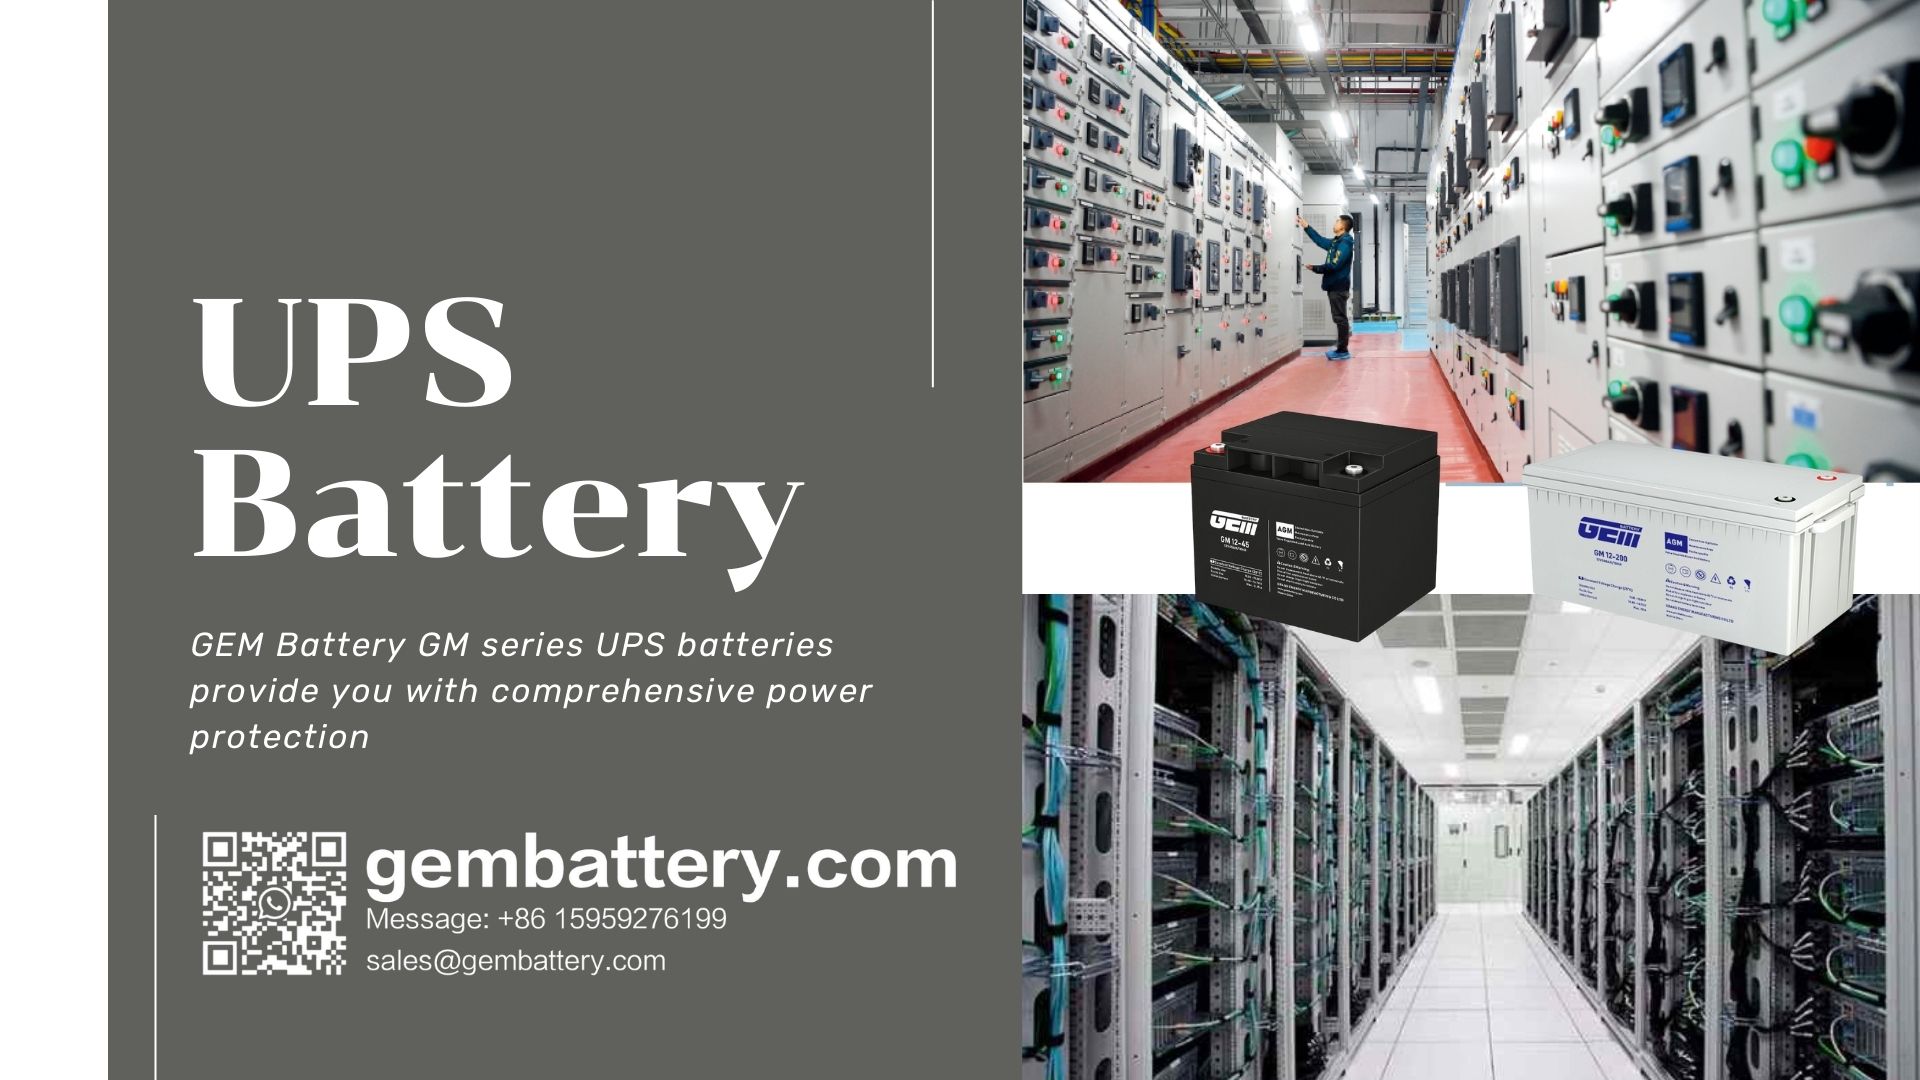 Fabricant de batteries UPS